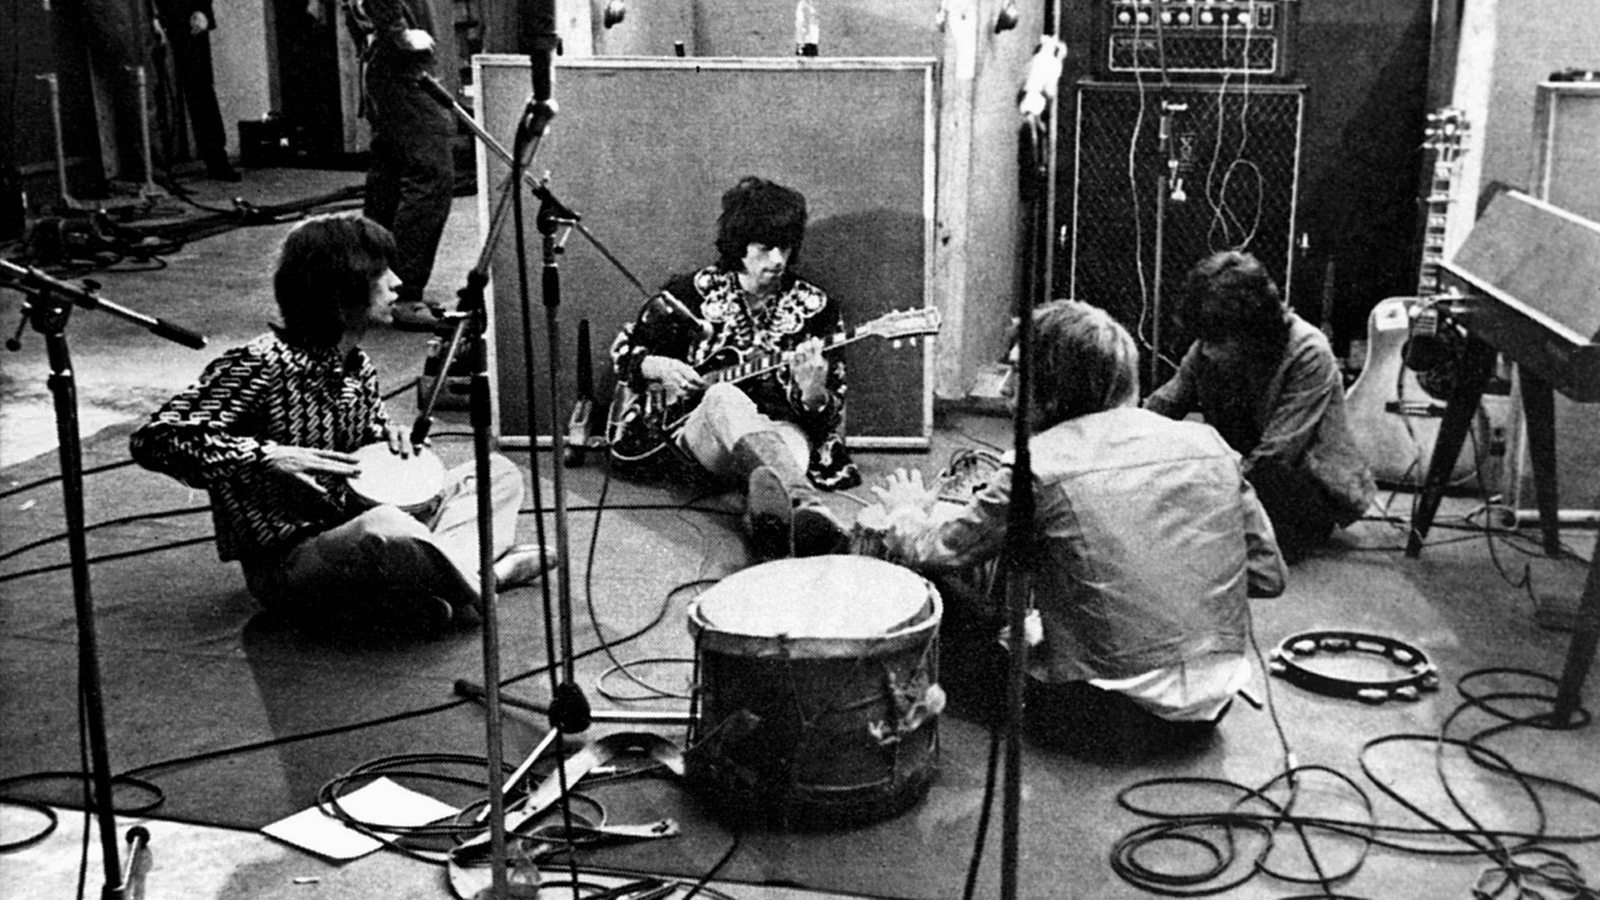 Szenefotos aus dem Rolling Stones Film: Sympathy For The Devil (1968) Regie: Jean-Luc Godard 1968